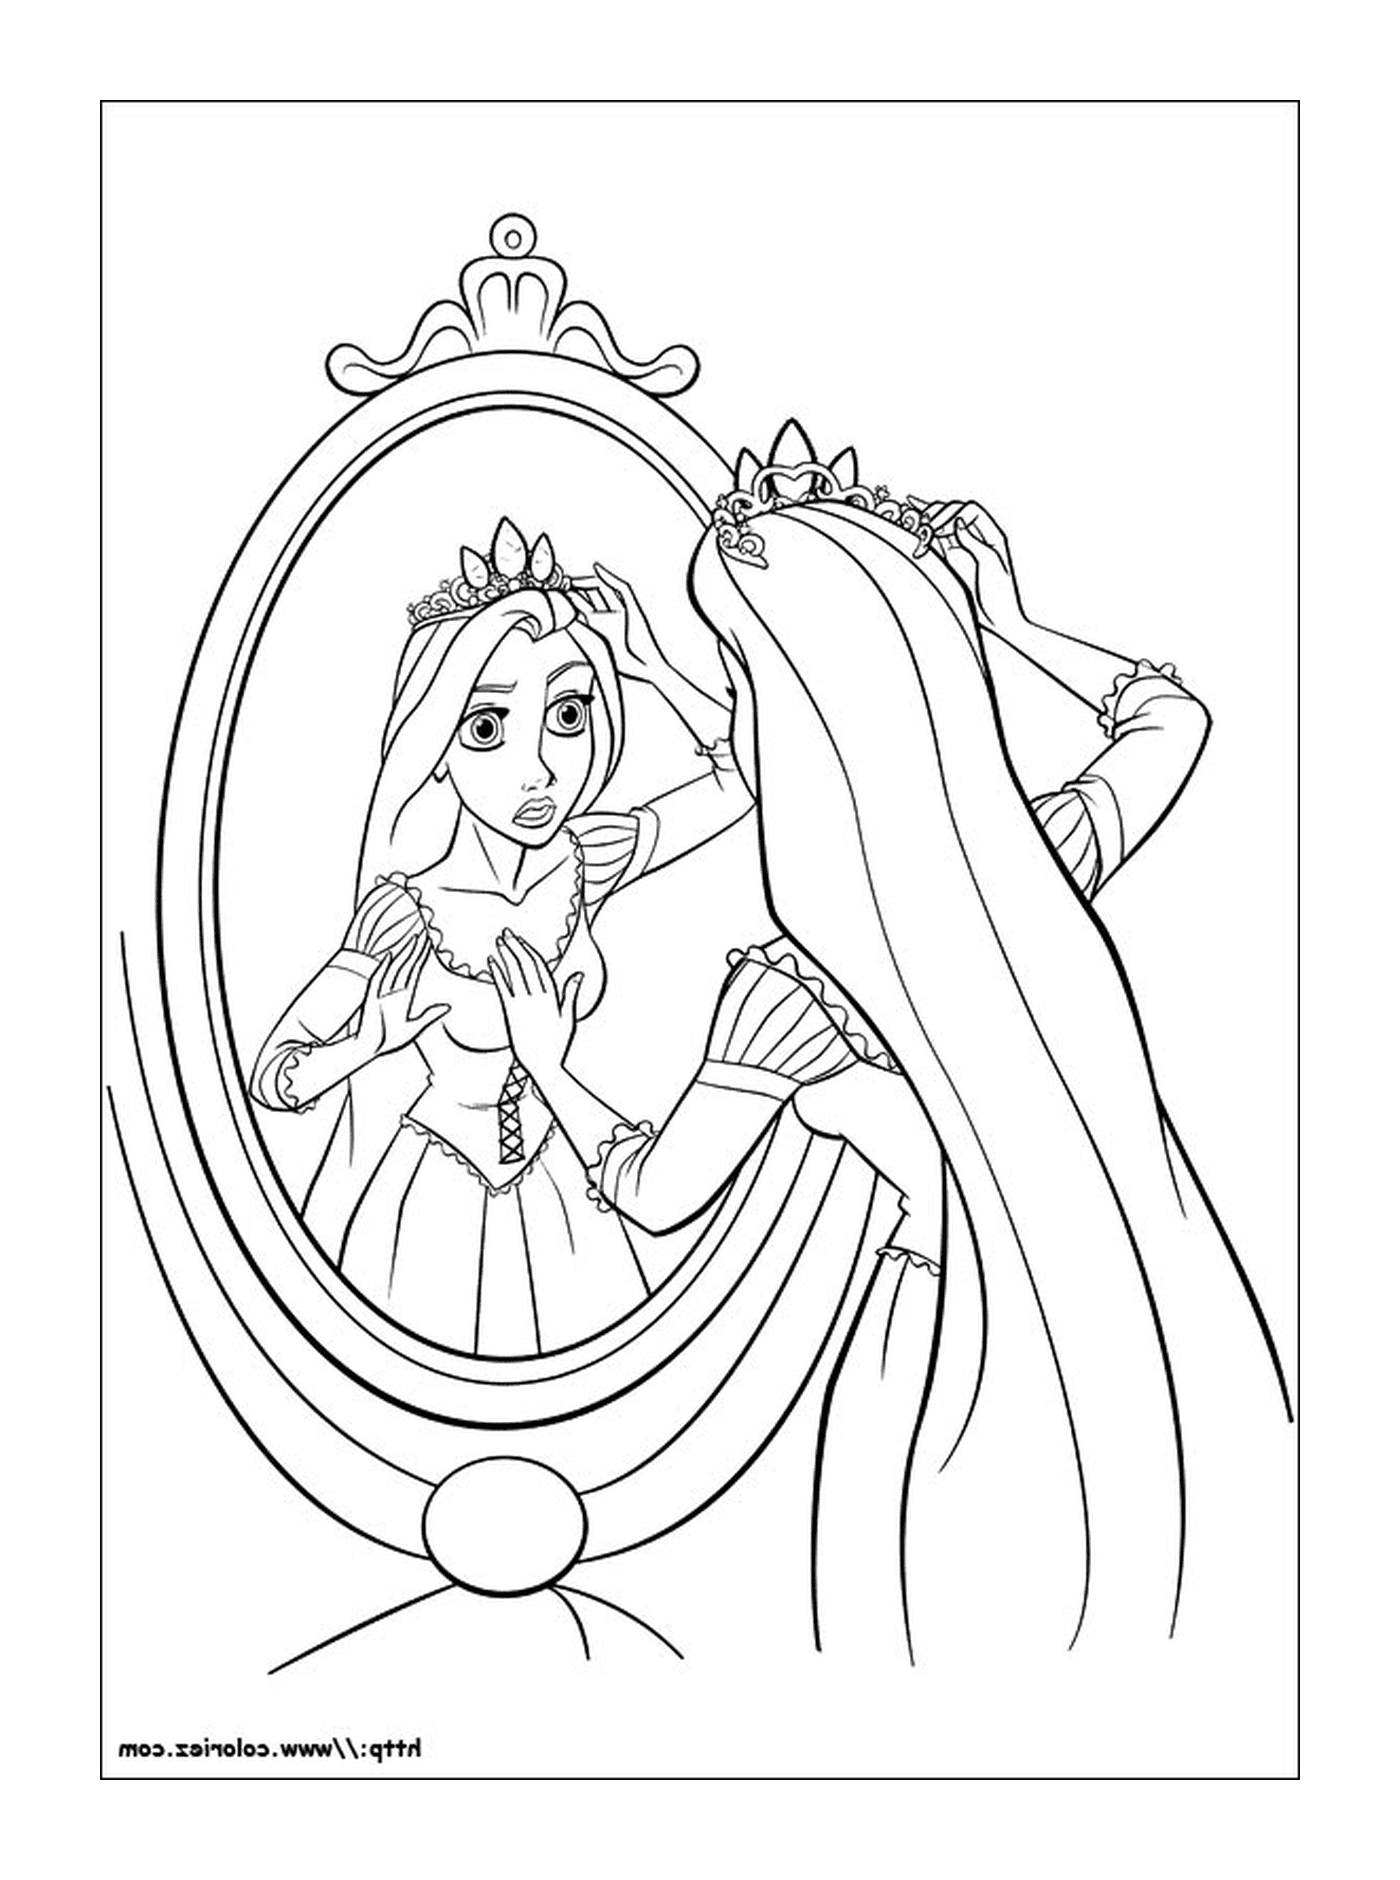  Prinzessin Raiponce, majestätische Krone 